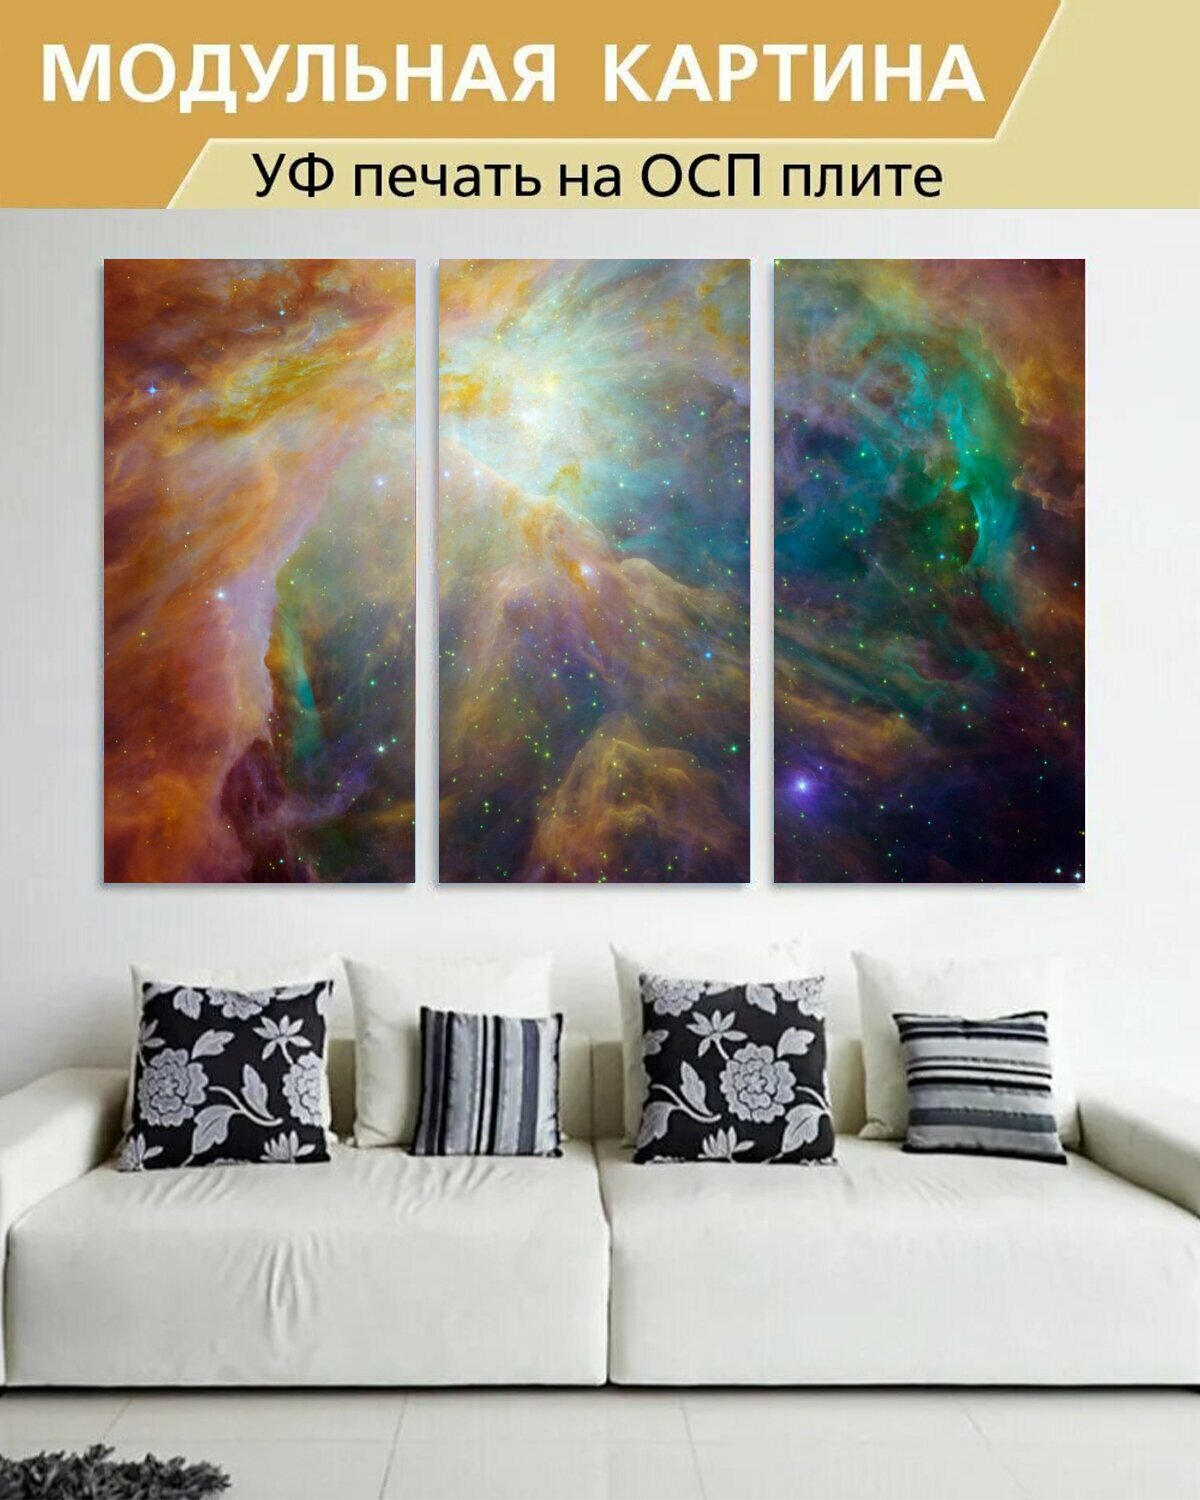 Модульная картина на ОСП "Туманность ориона, выброс тумана, созвездие орион" 188x125 см. 3 части для интерьера на стену